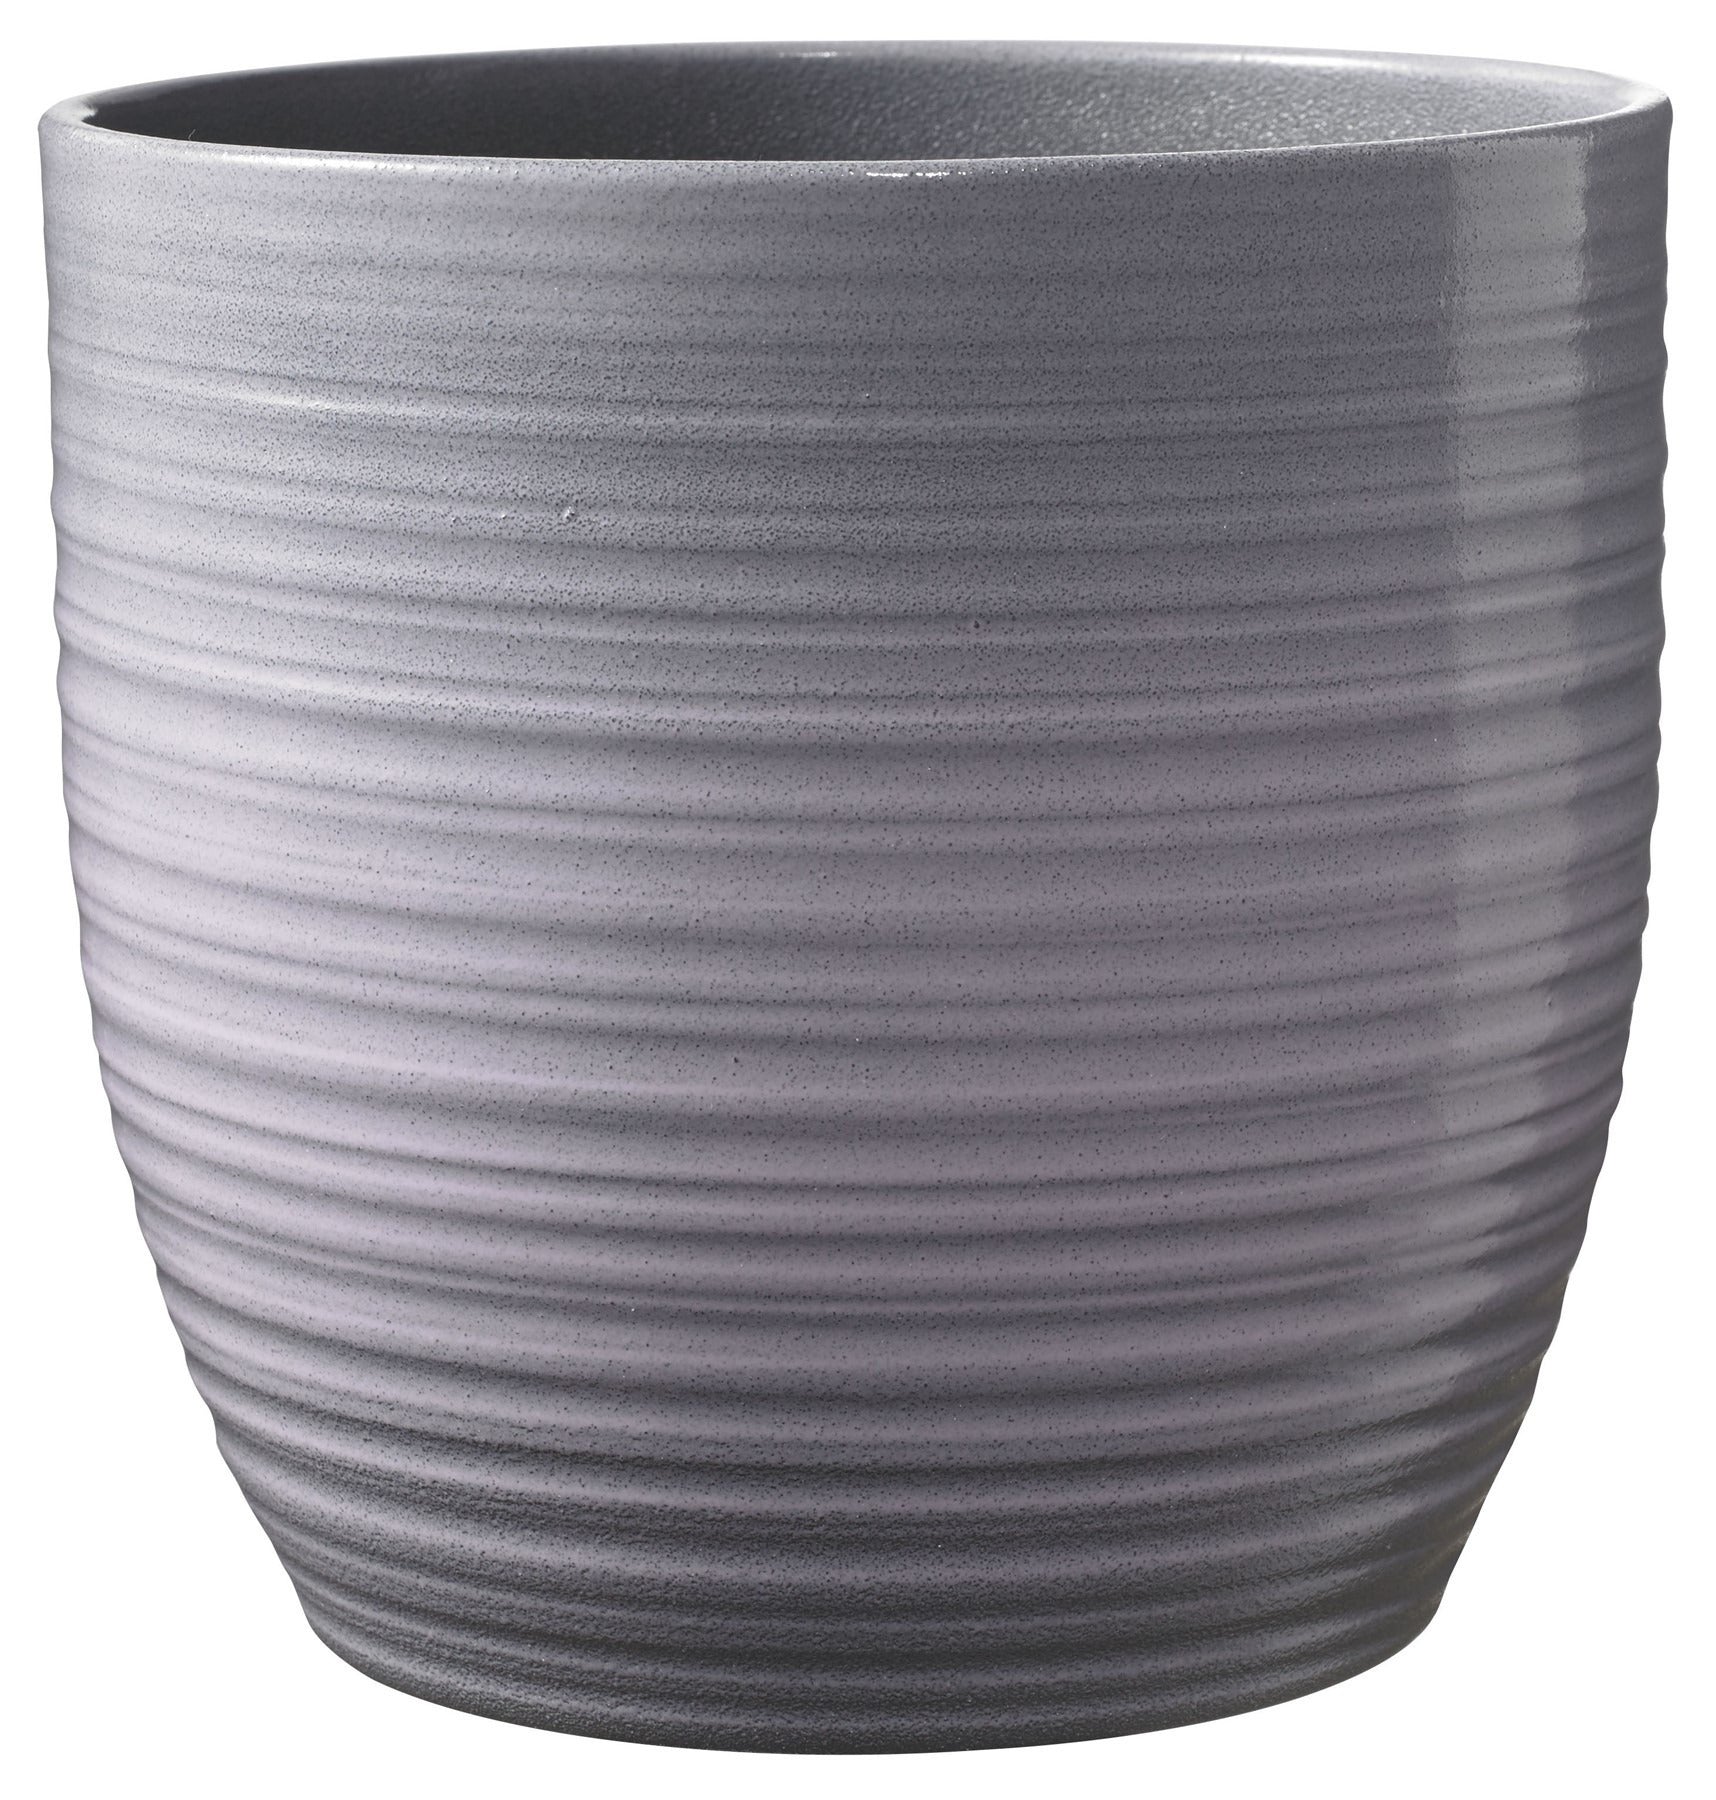 View Bergamo Ceramic Pot Lavender Glaze 16cm information